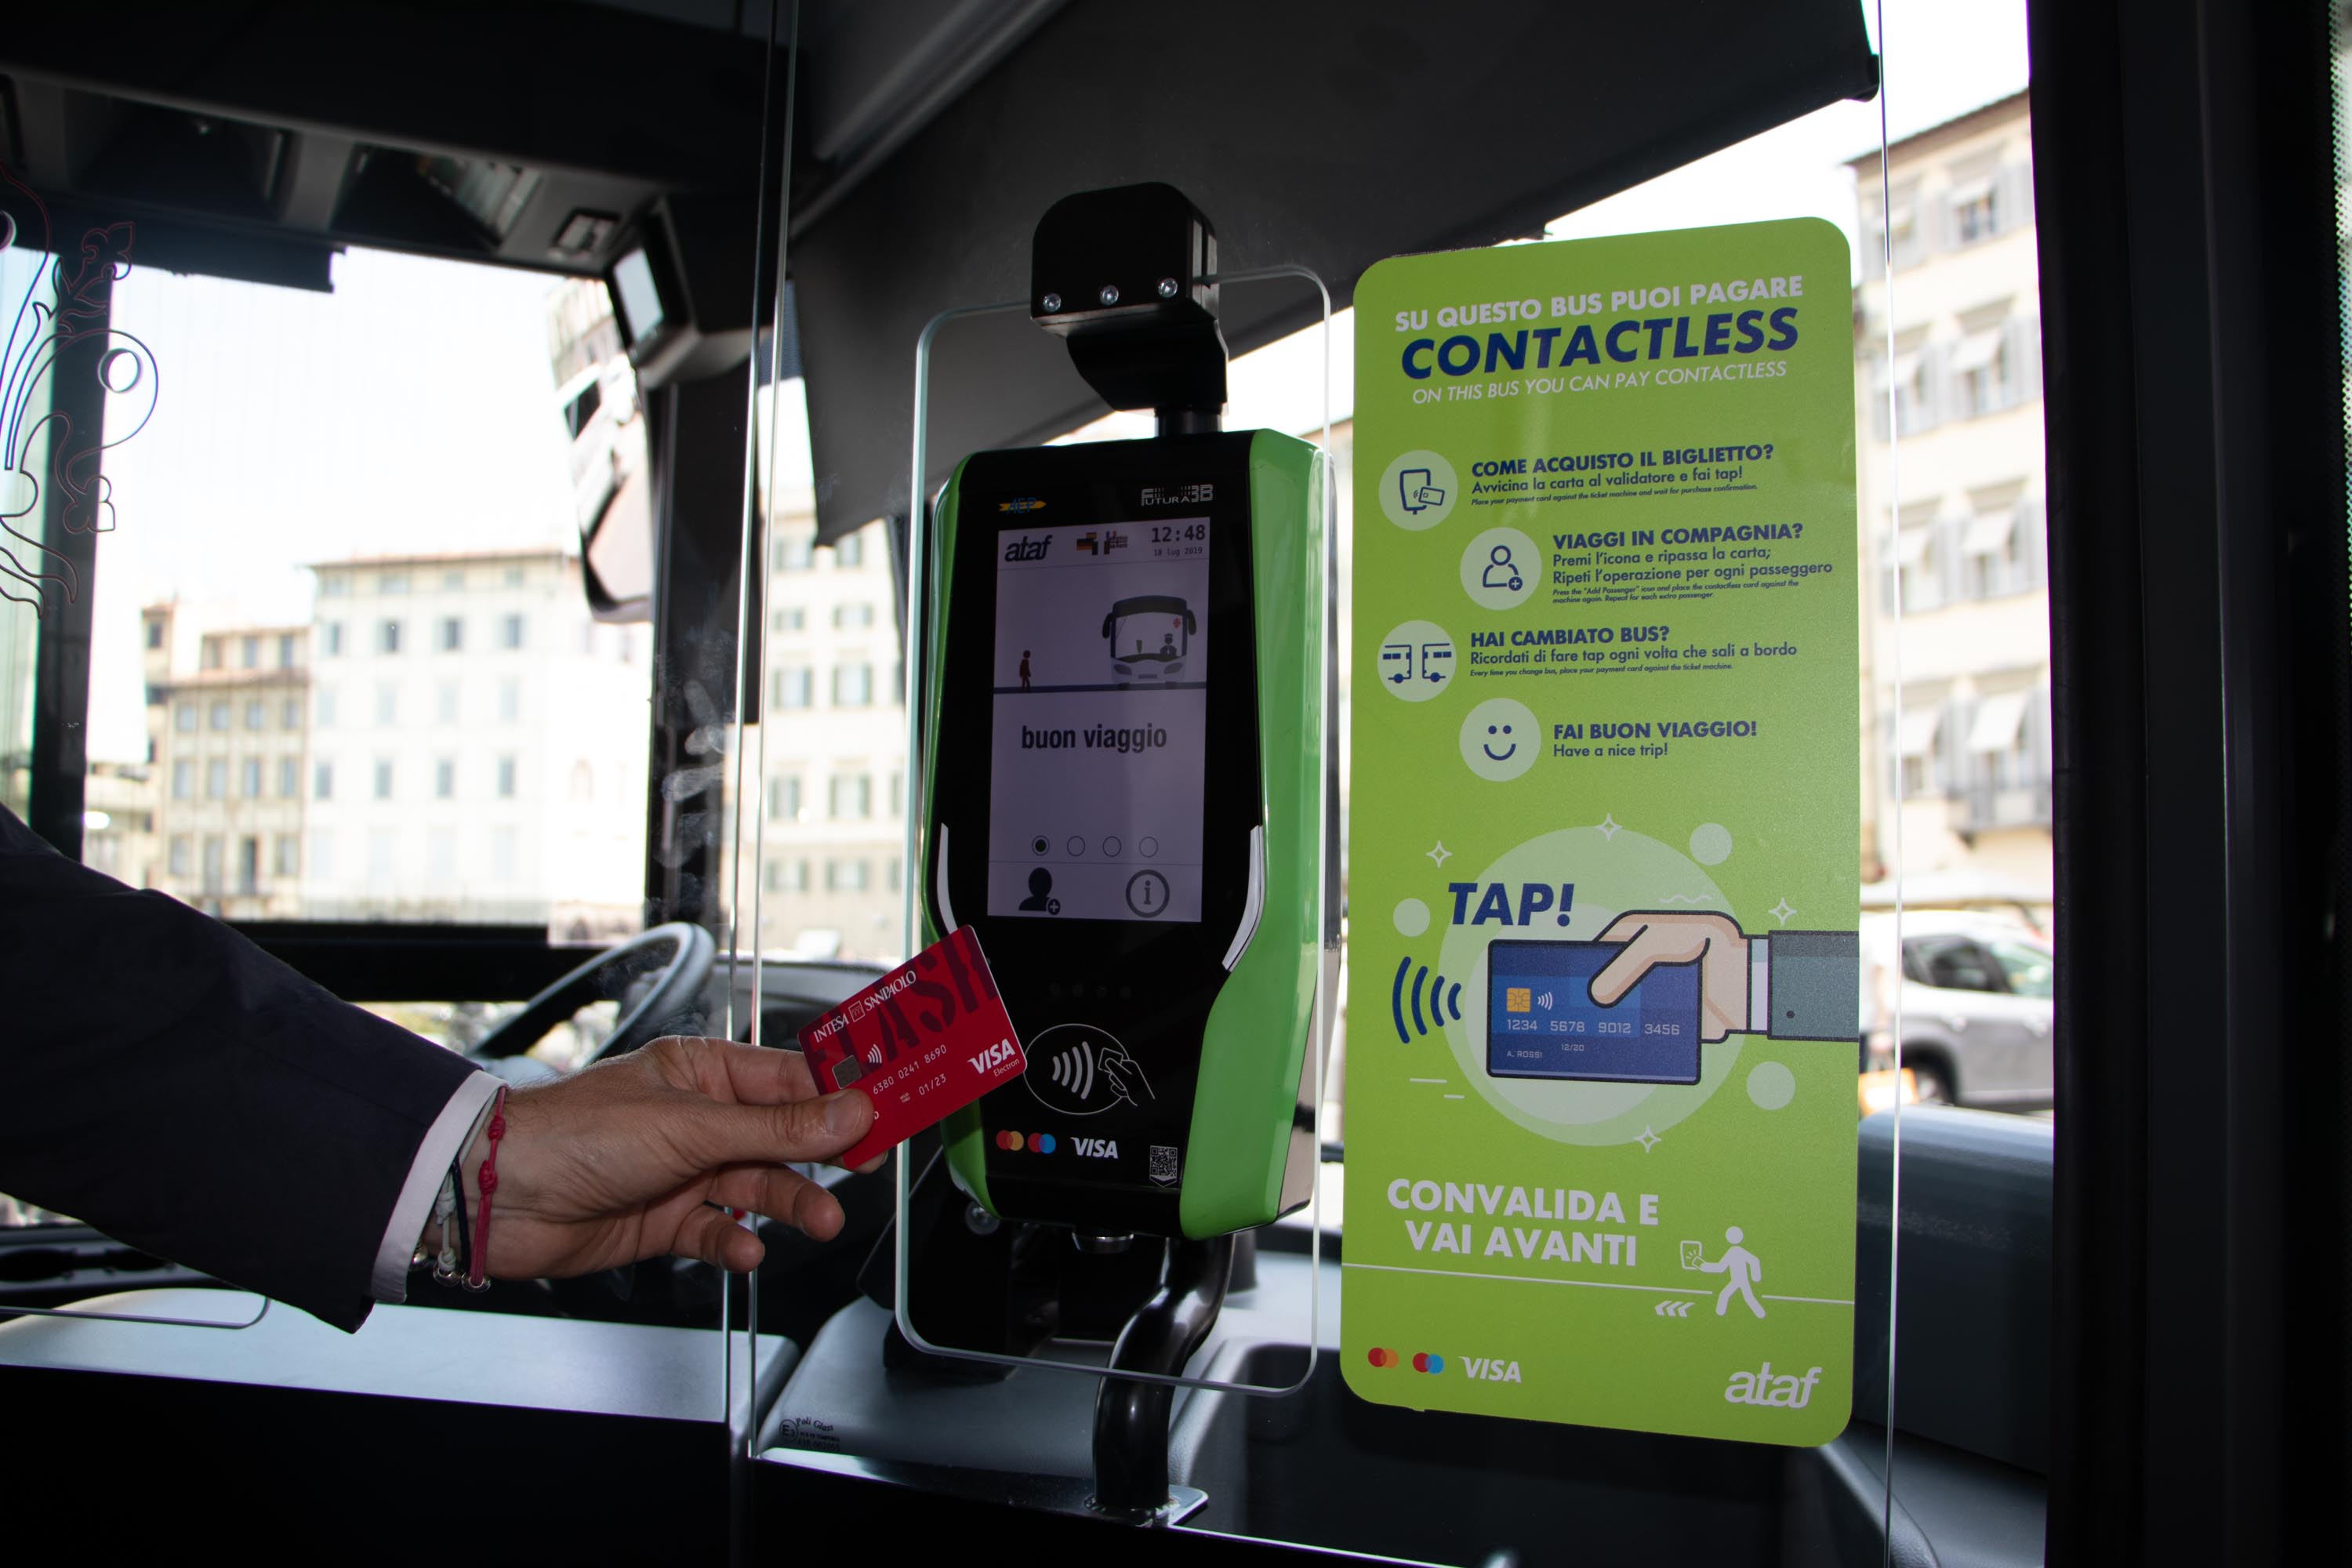 Macchinetta per il pagamento contactless sui bus Ataf